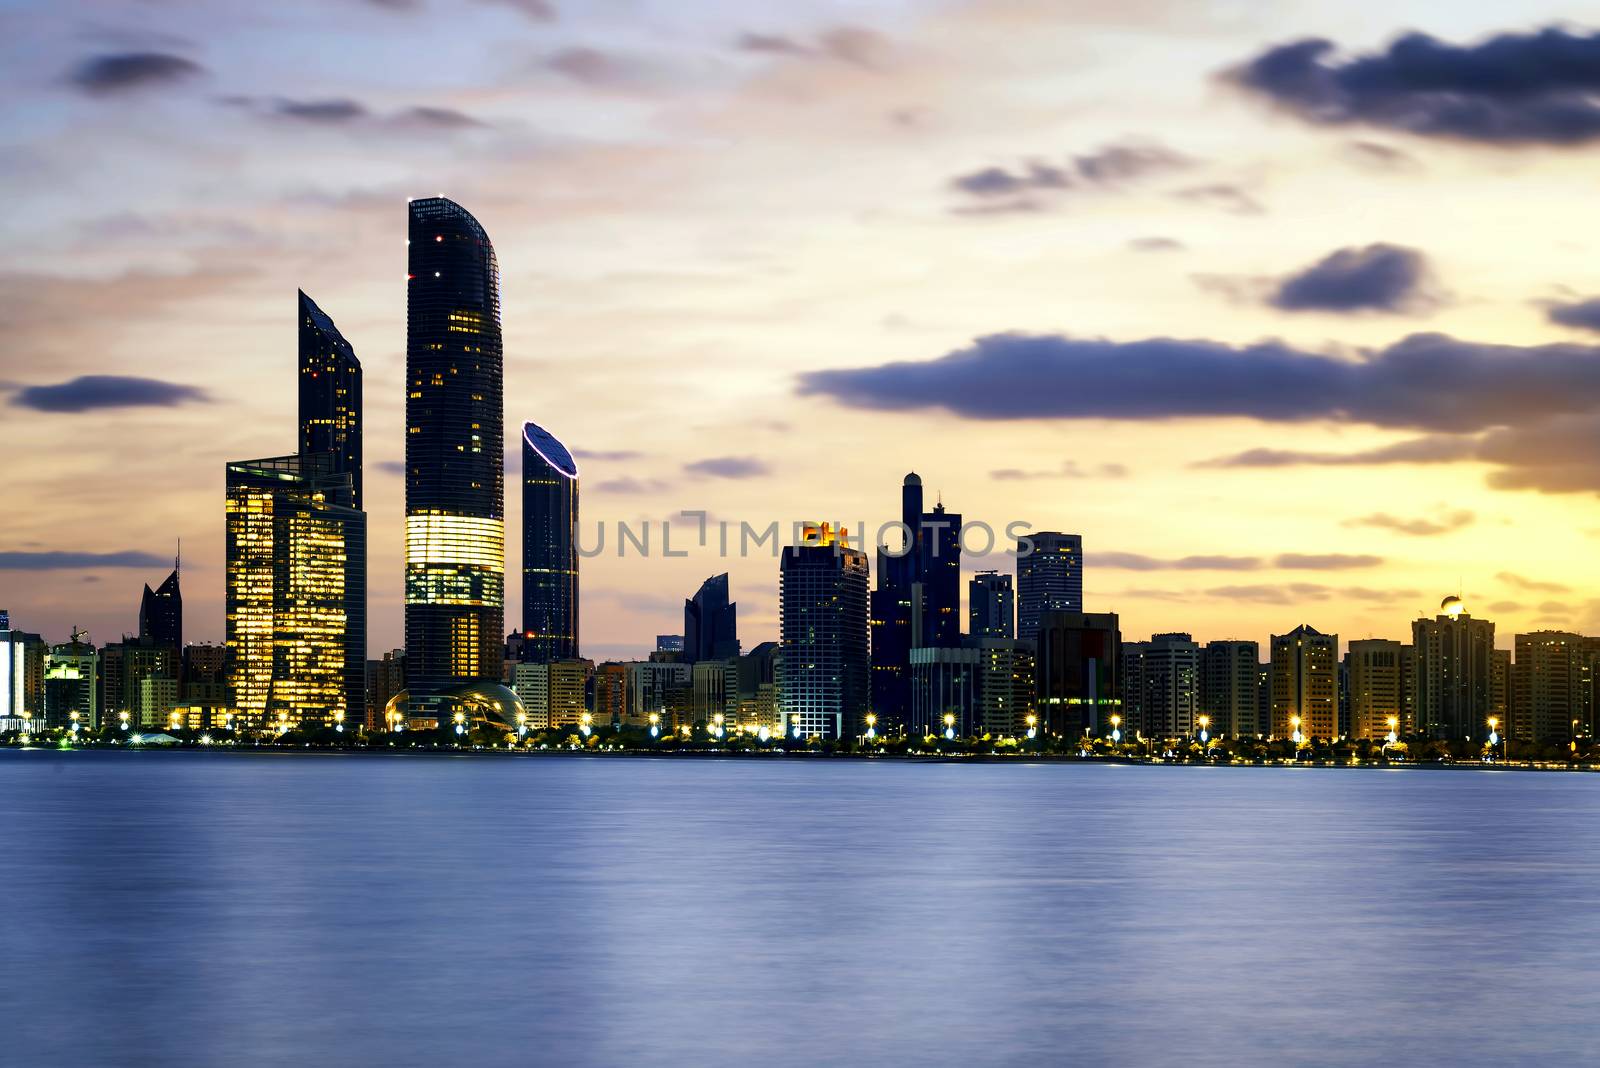 Abu Dhabi Skyline by ventdusud